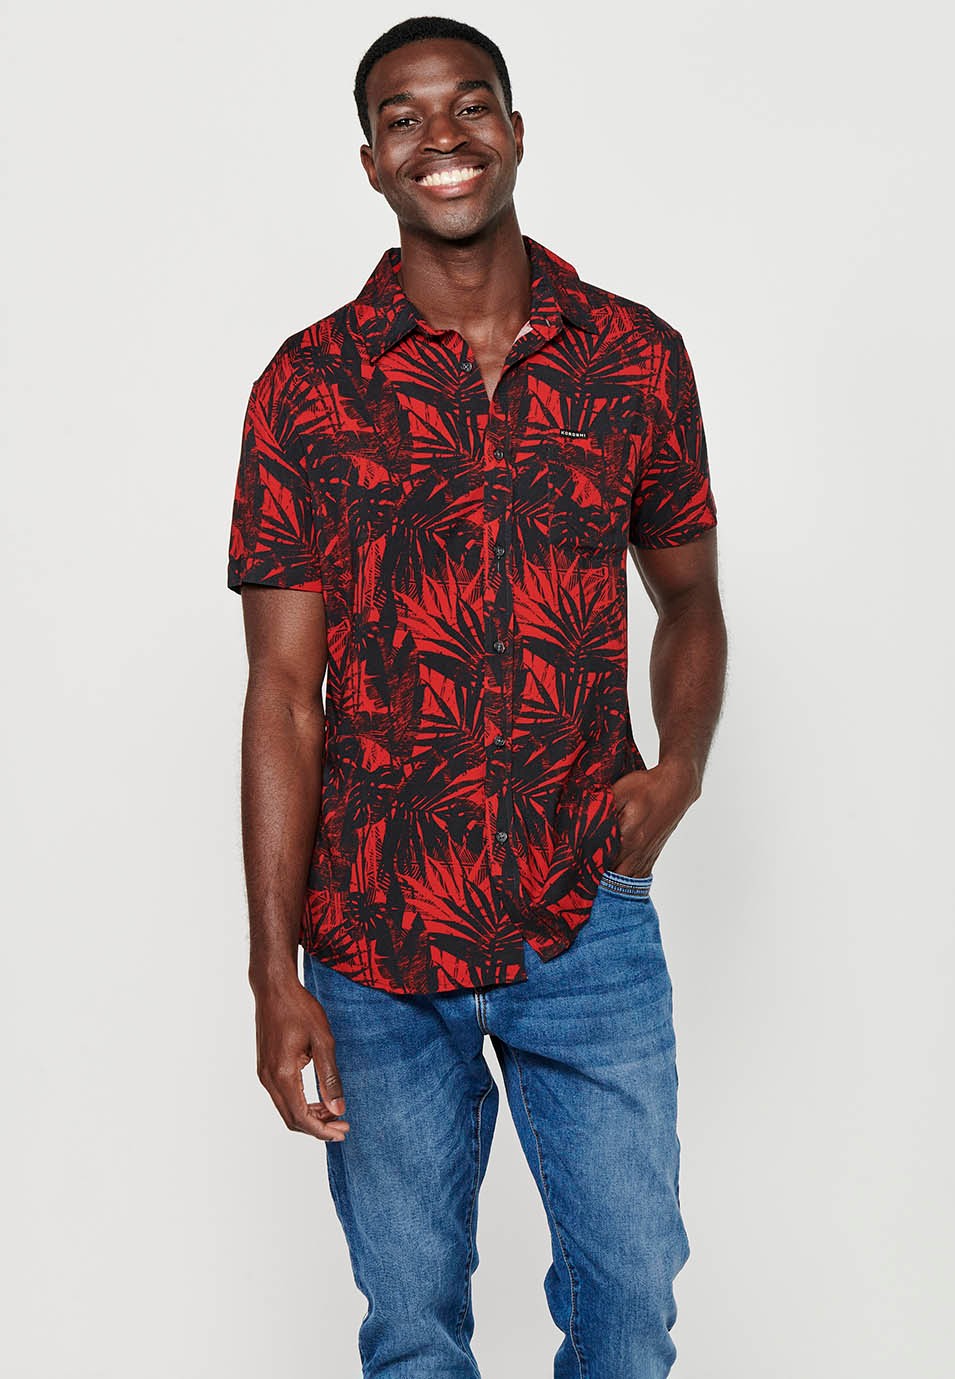 Chemise à manches courtes pour hommes, imprimé floral rouge, fermeture boutonnée sur le devant